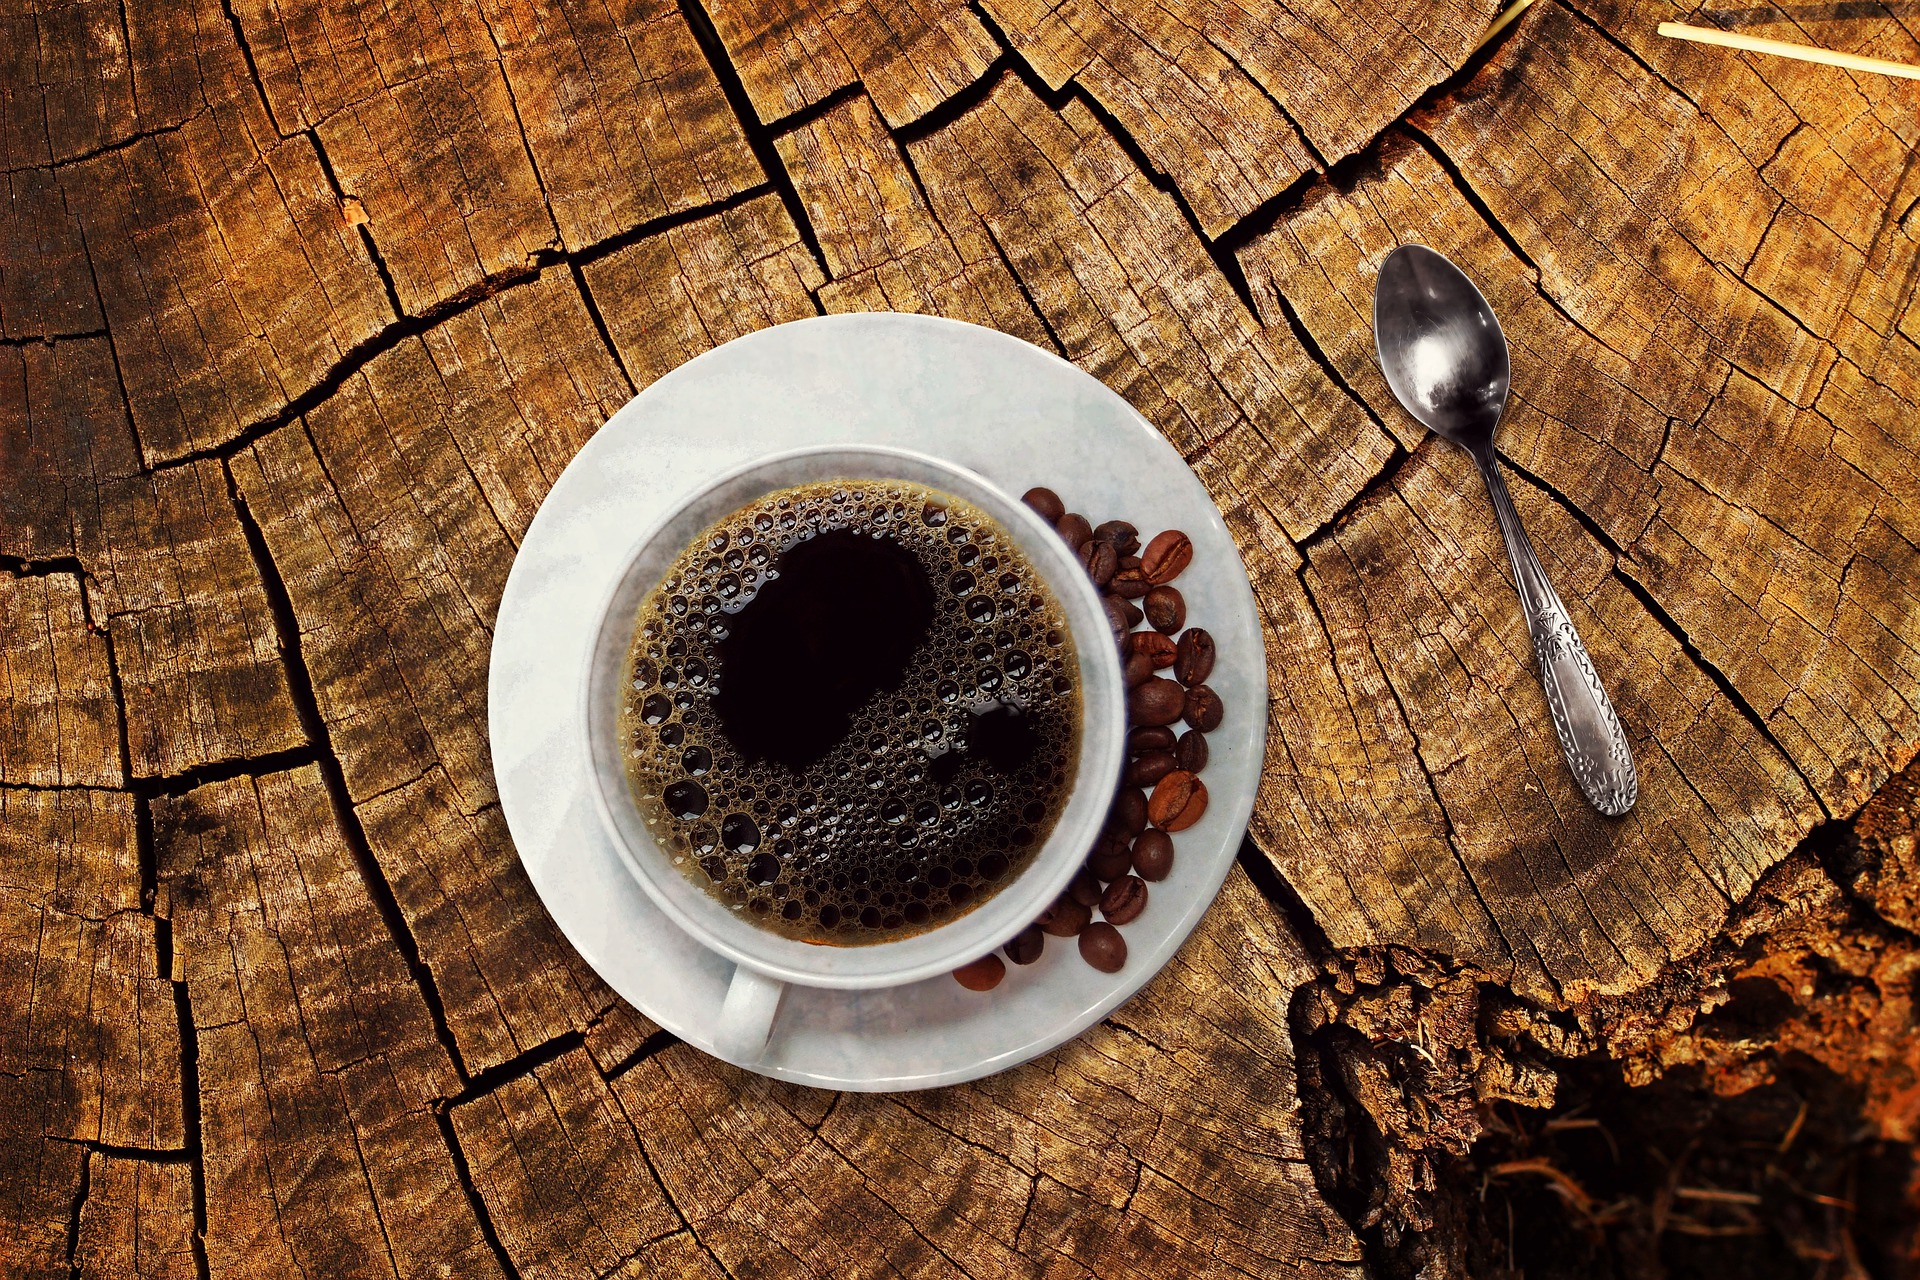 Boire un peu de café tous les jours est bon pour la santé. (Crédit : Pixabay)